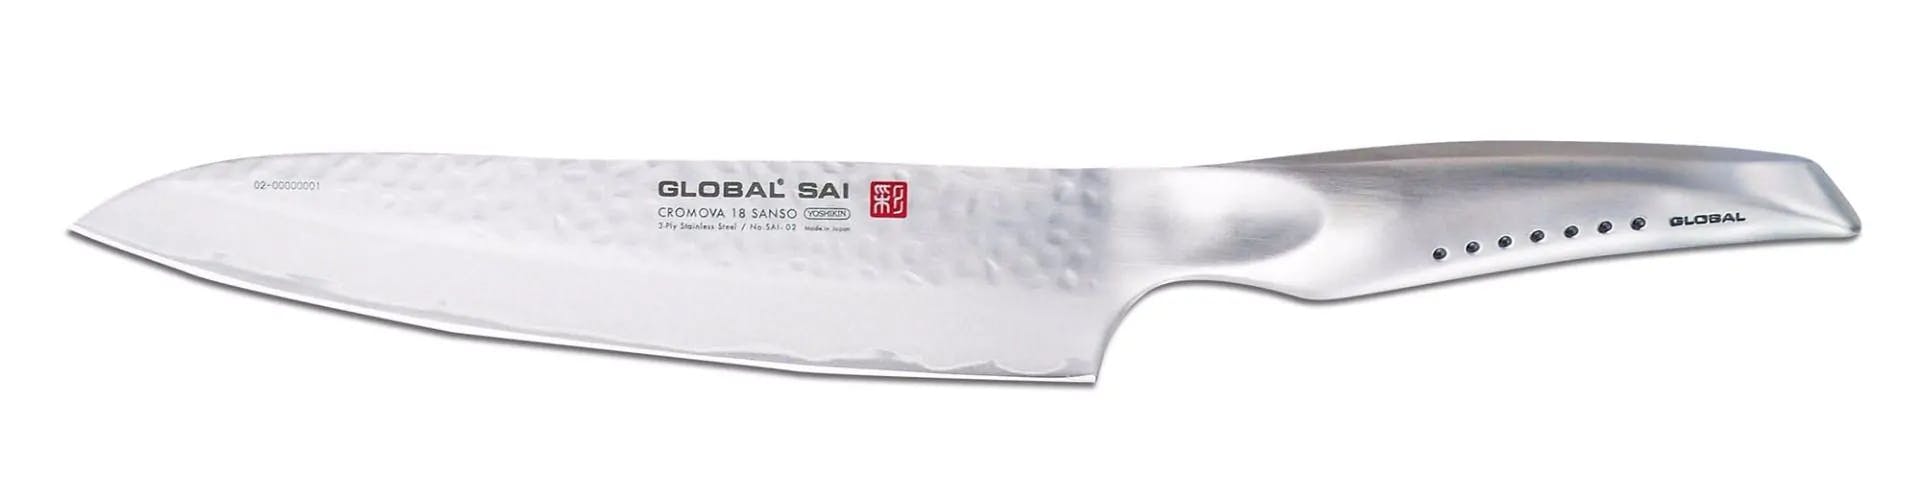 Global SAI 7-Piece Knife Block Set